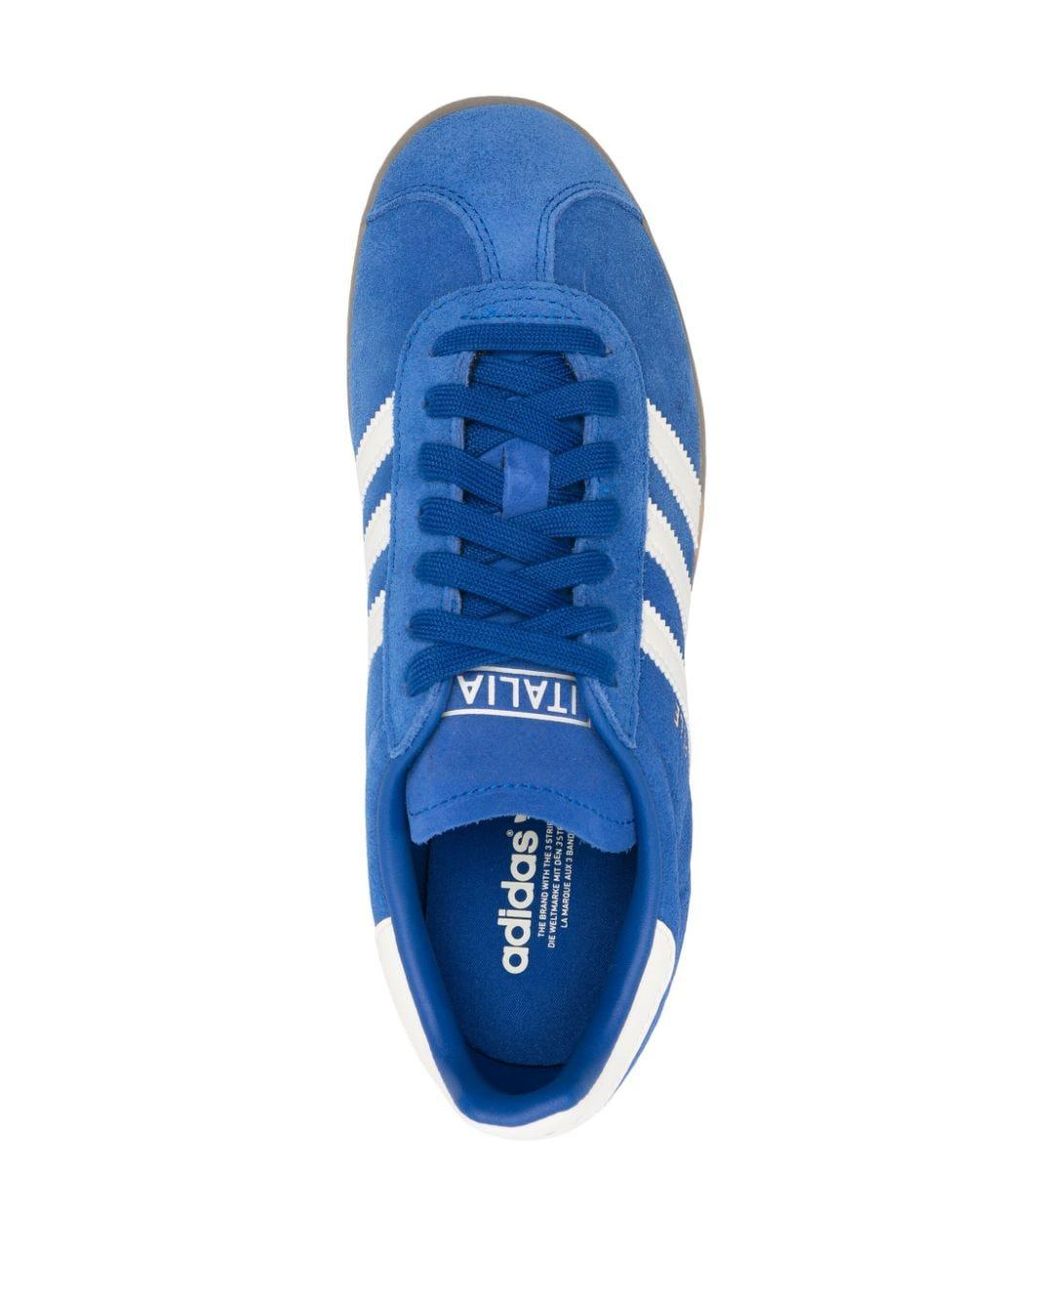 adidas Gazelle Suede Sneakers in Blue | Lyst